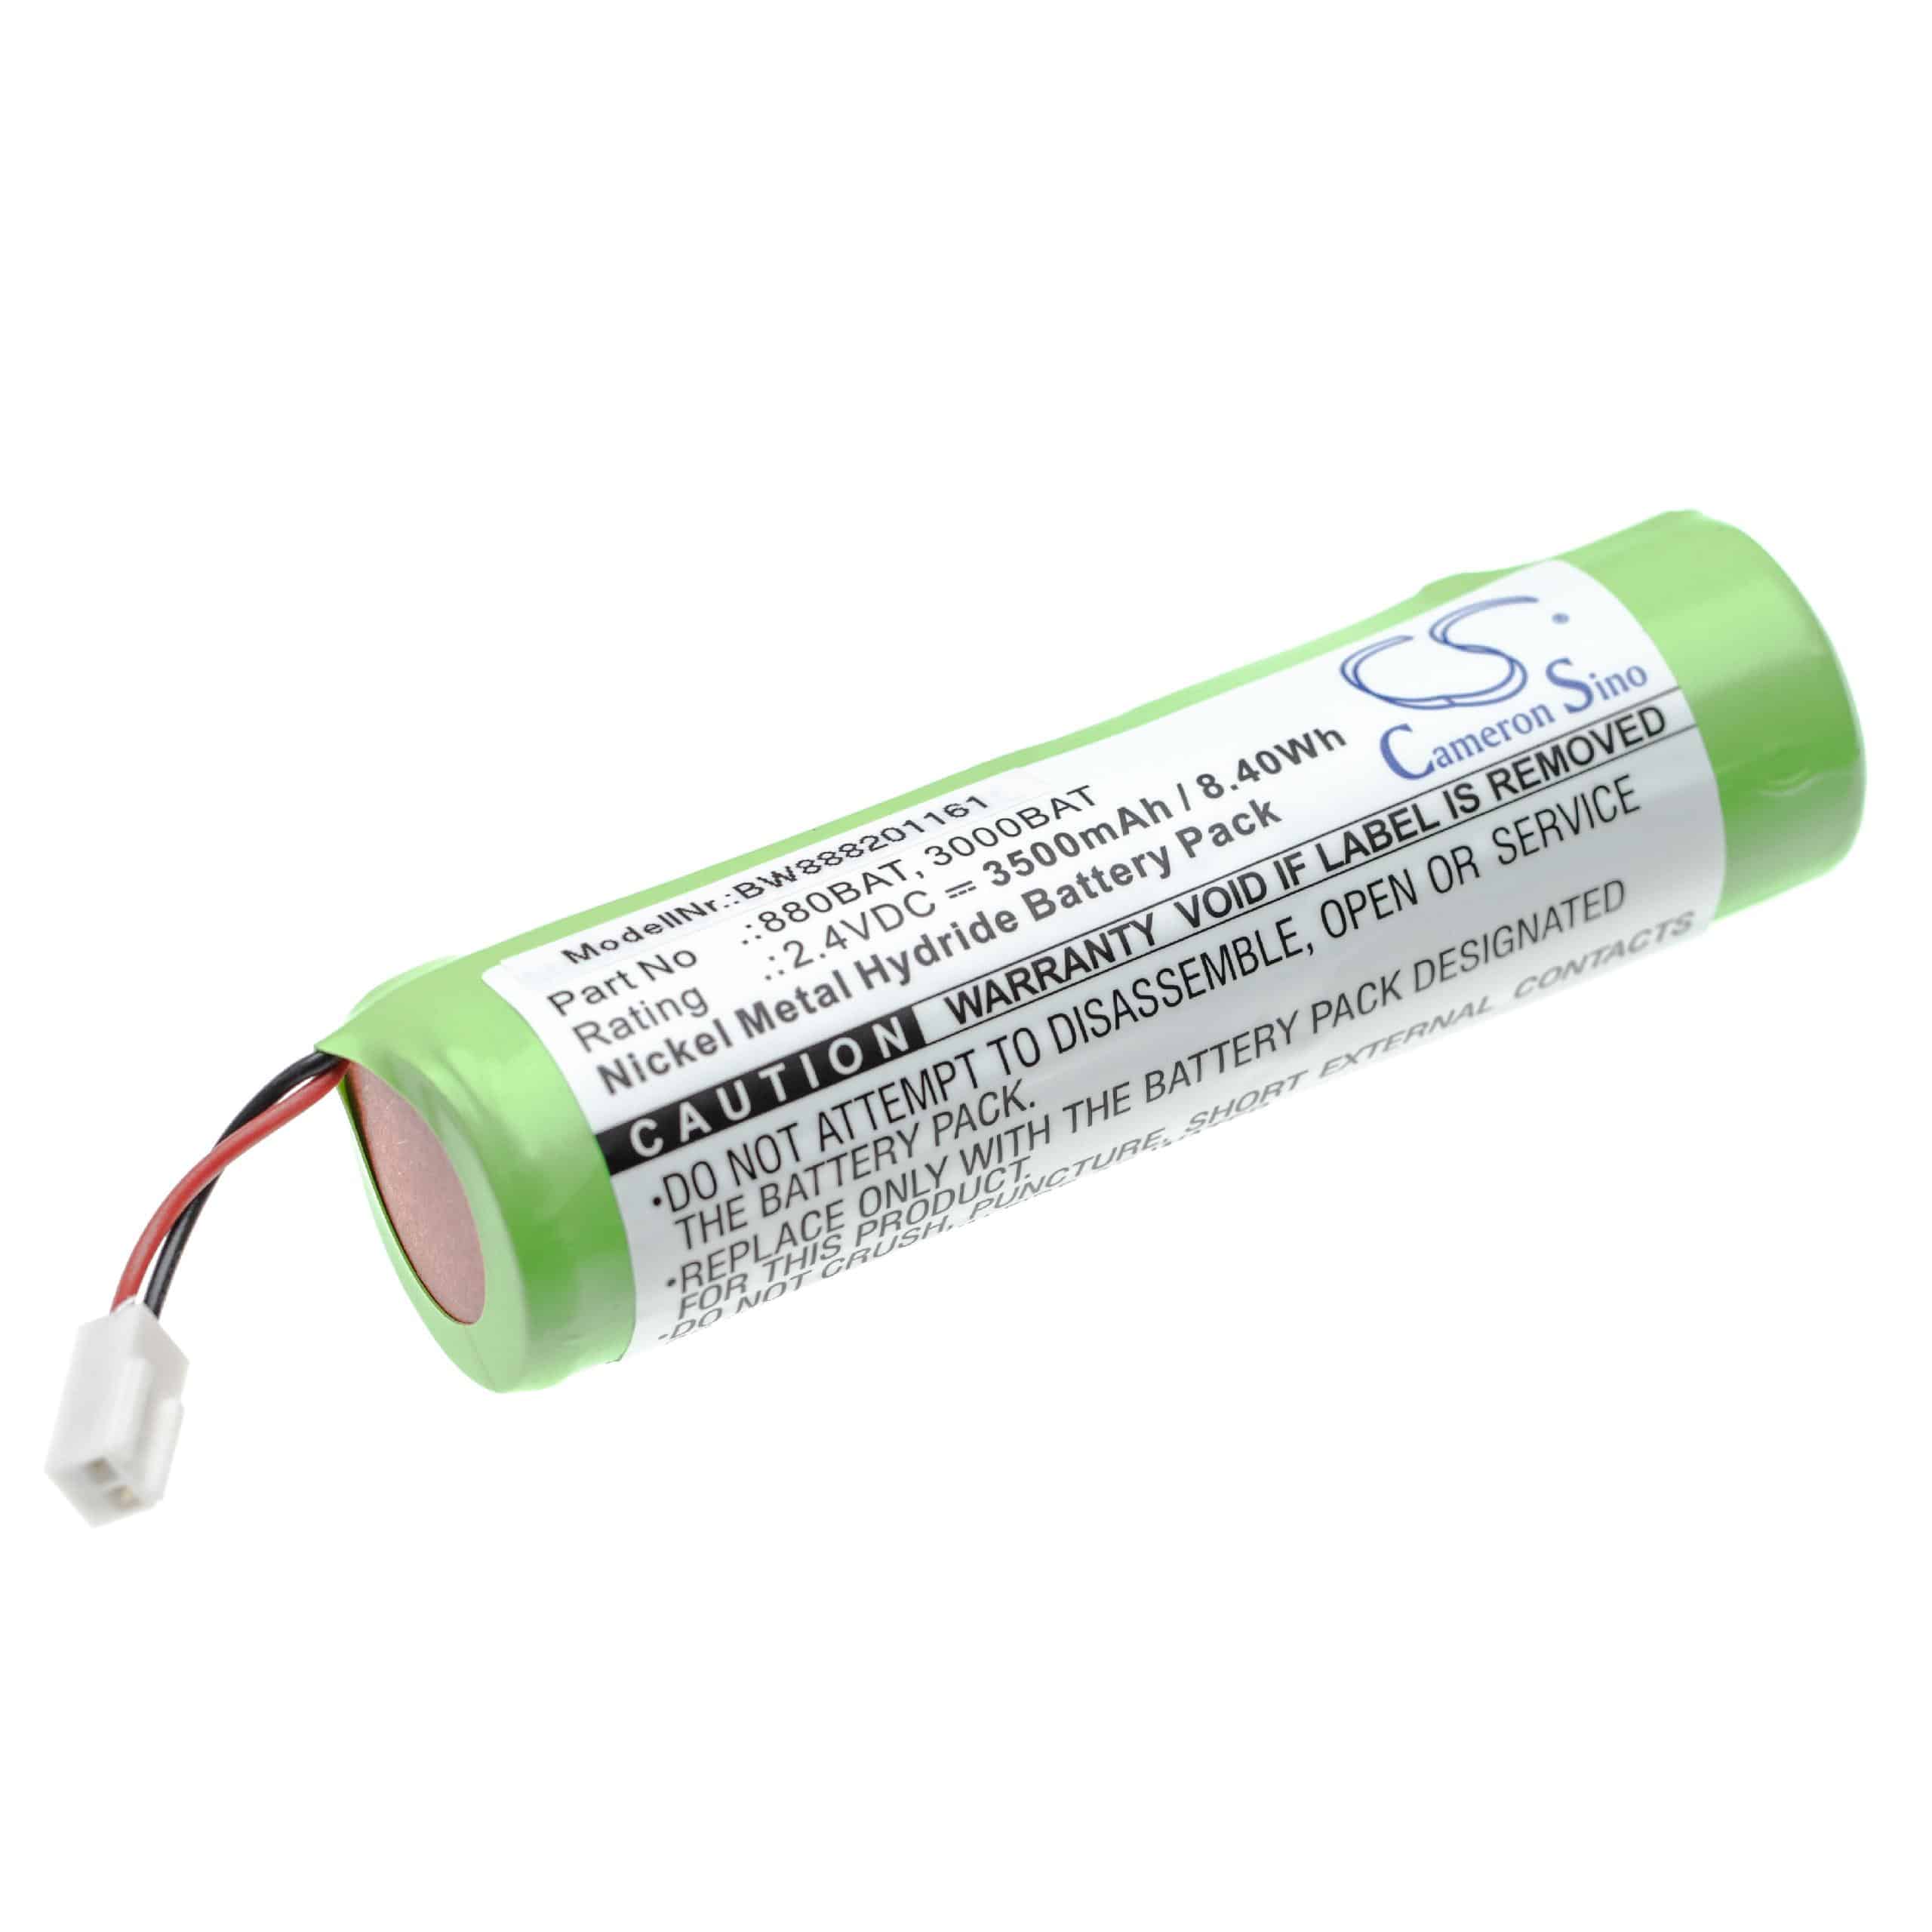 Batterie remplace NOVIPro 3000BAT, 880BAT pour outil de mesure - 3500mAh 2,4V NiMH